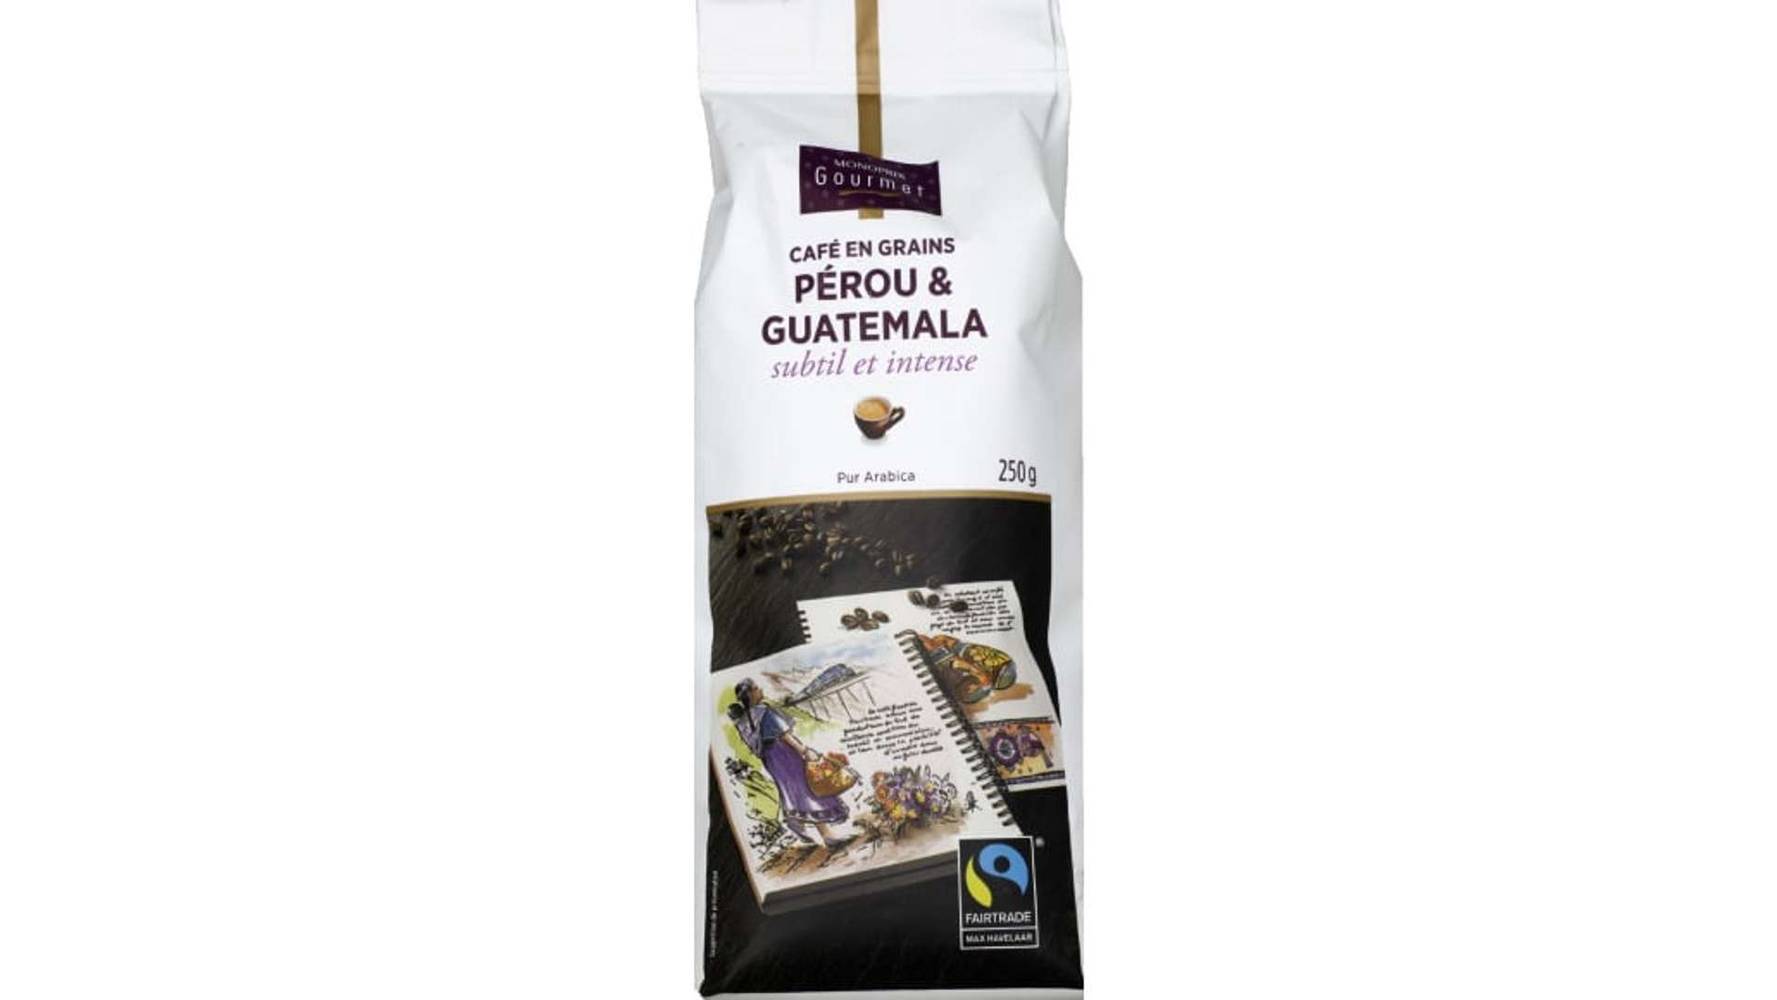 Monoprix Gourmet Café en grains Pérou & Guatemala, subtil et intense Le paquet de 250g